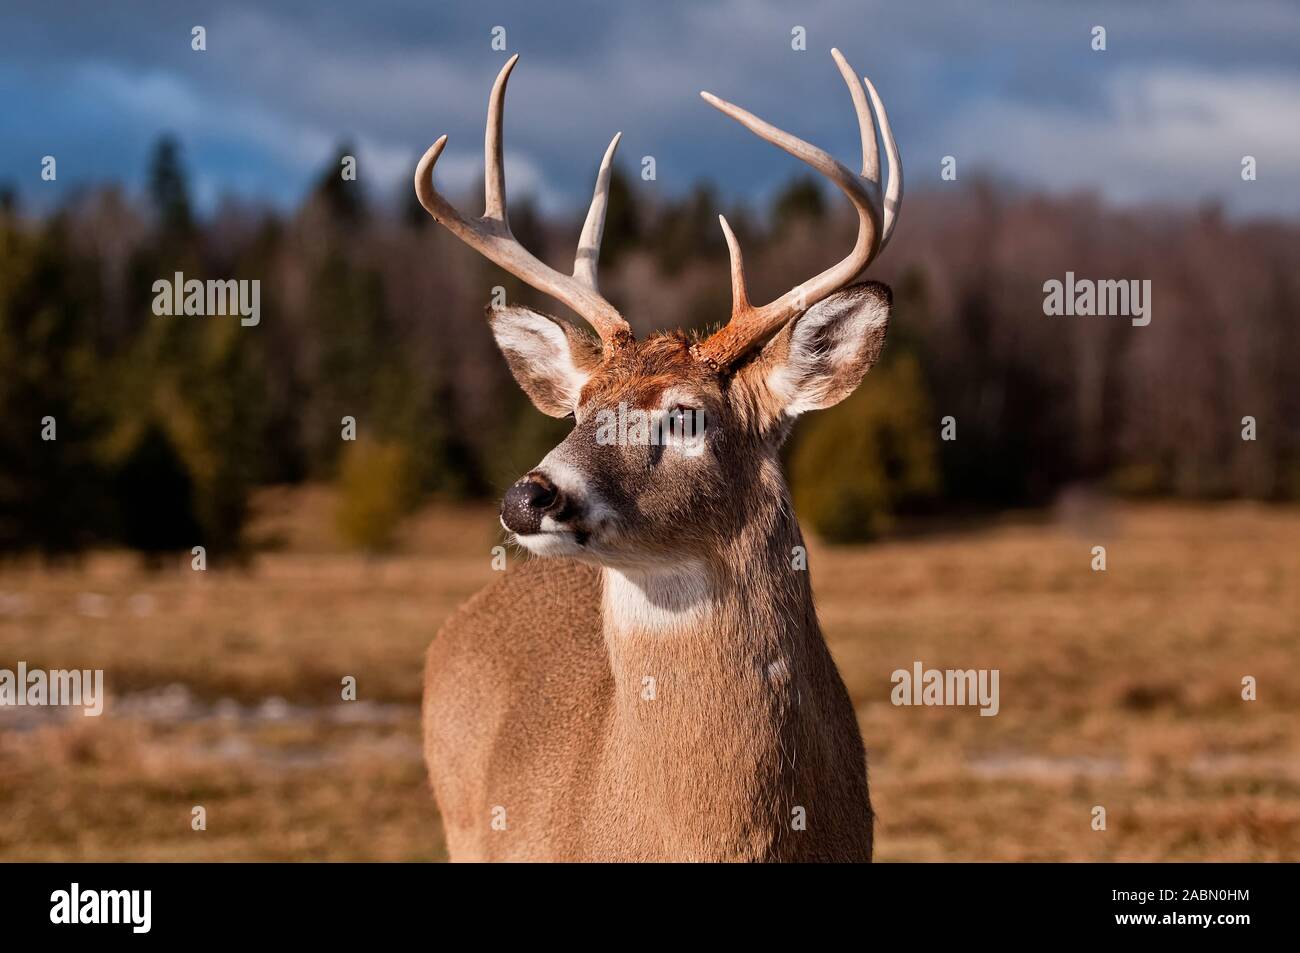 Male Deer buck in a field. Stock Photo